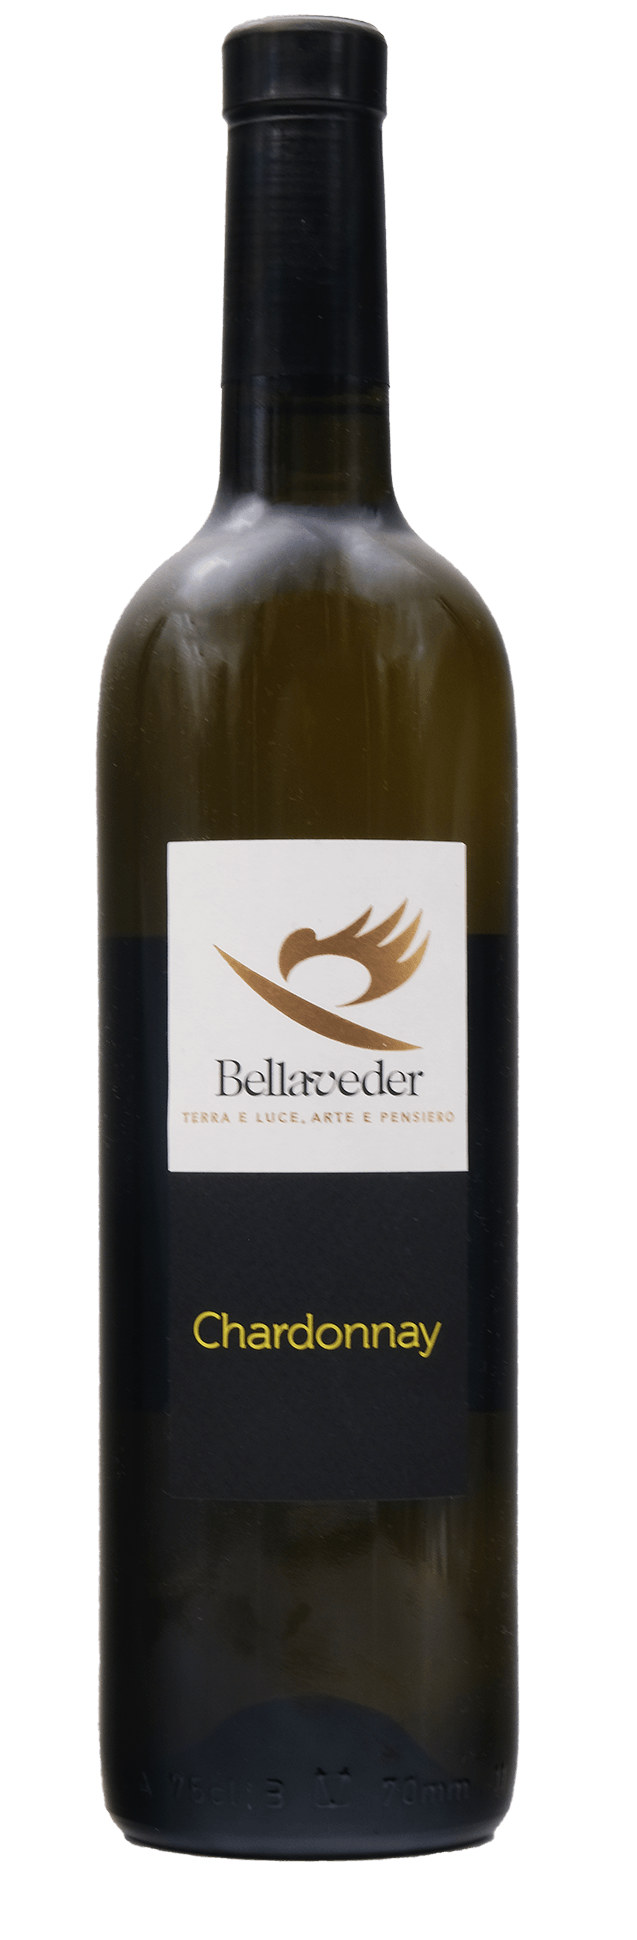 Bellaveder - Chardonnay Fronte